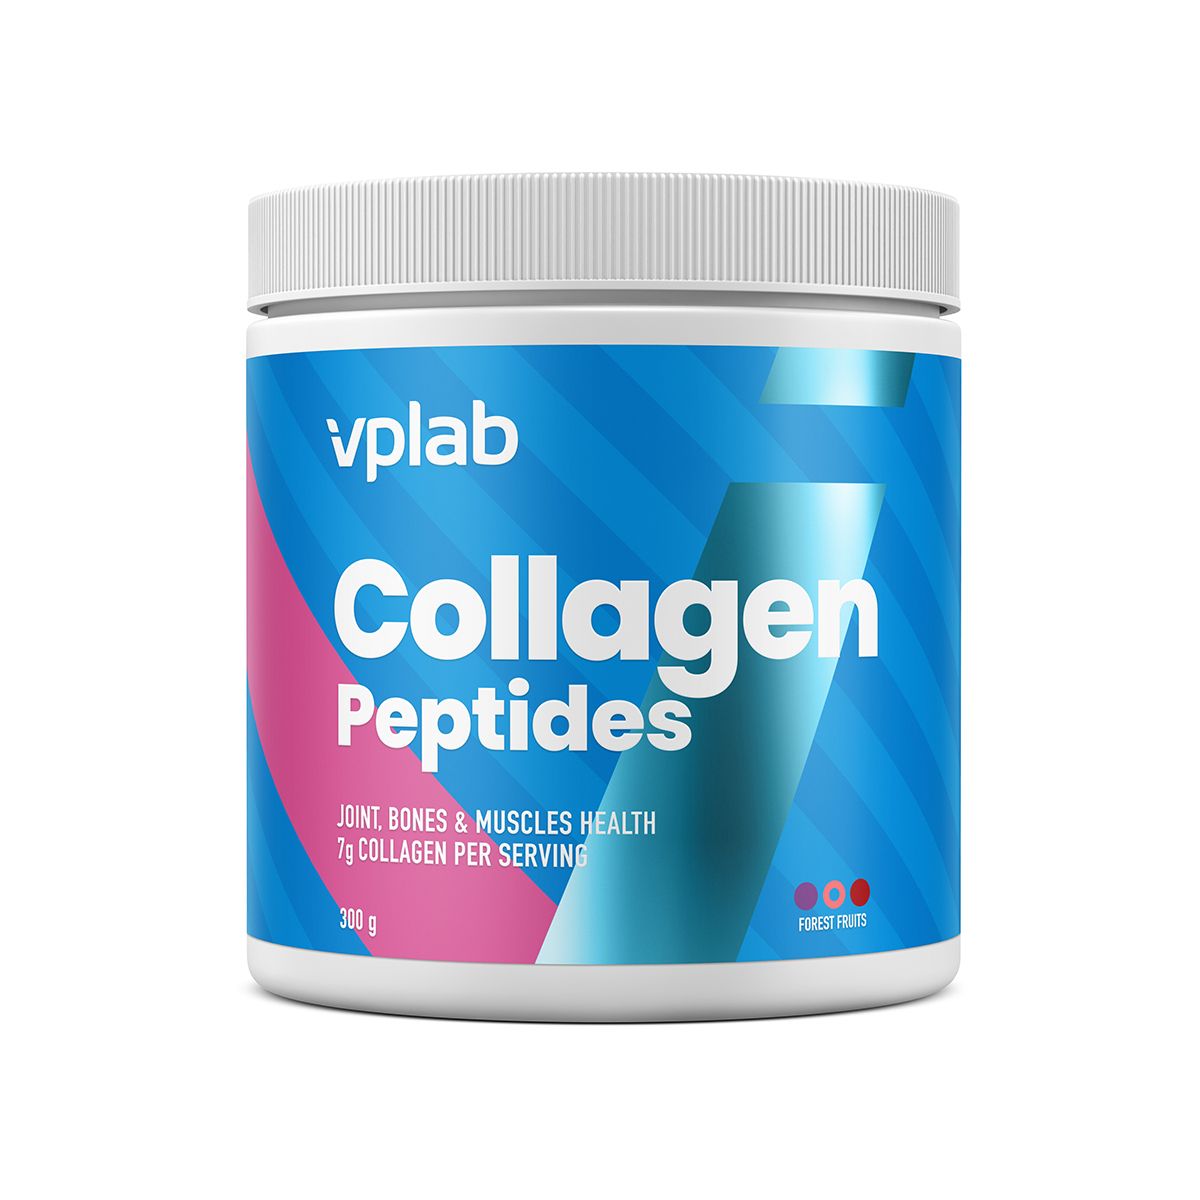 VPLAB Collagen Peptides Forrest Fruit 300 g VPLAB